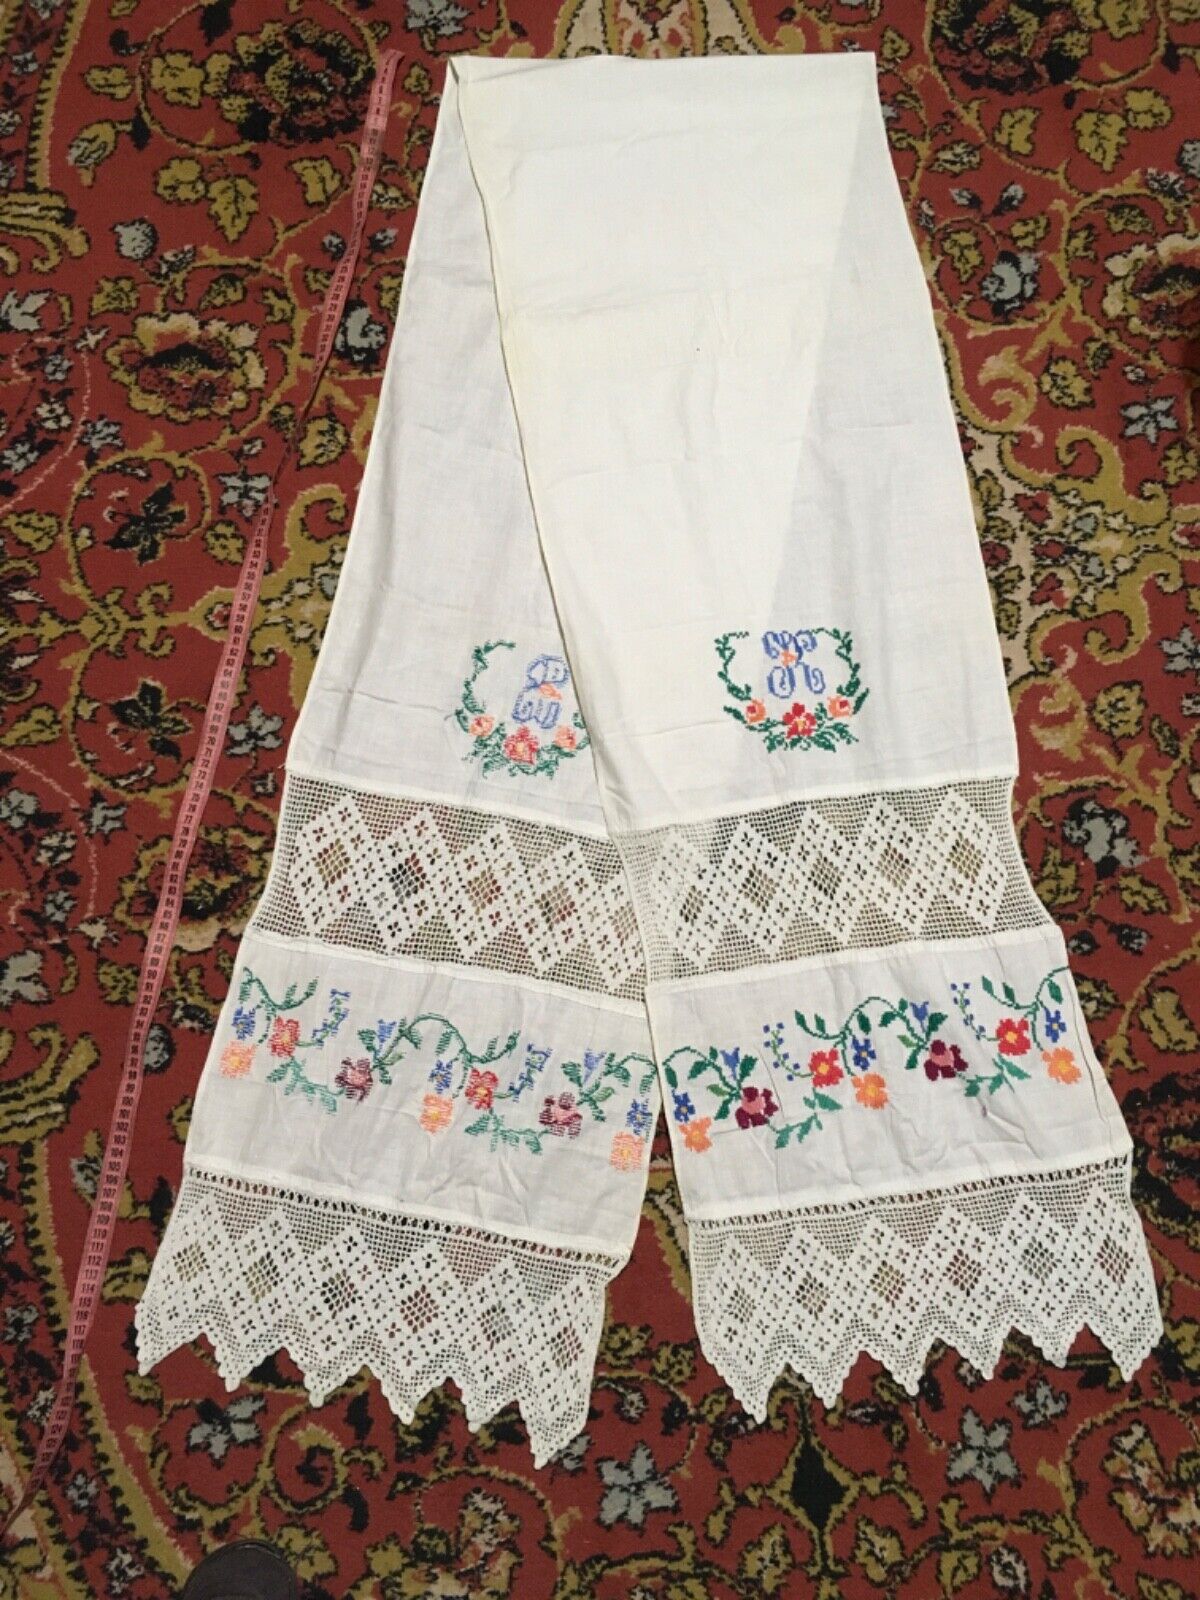 Rare antique UKRAINIAN RUSHNYK RUSHNIK UKRAINE  Old Hand Embroidery Towel